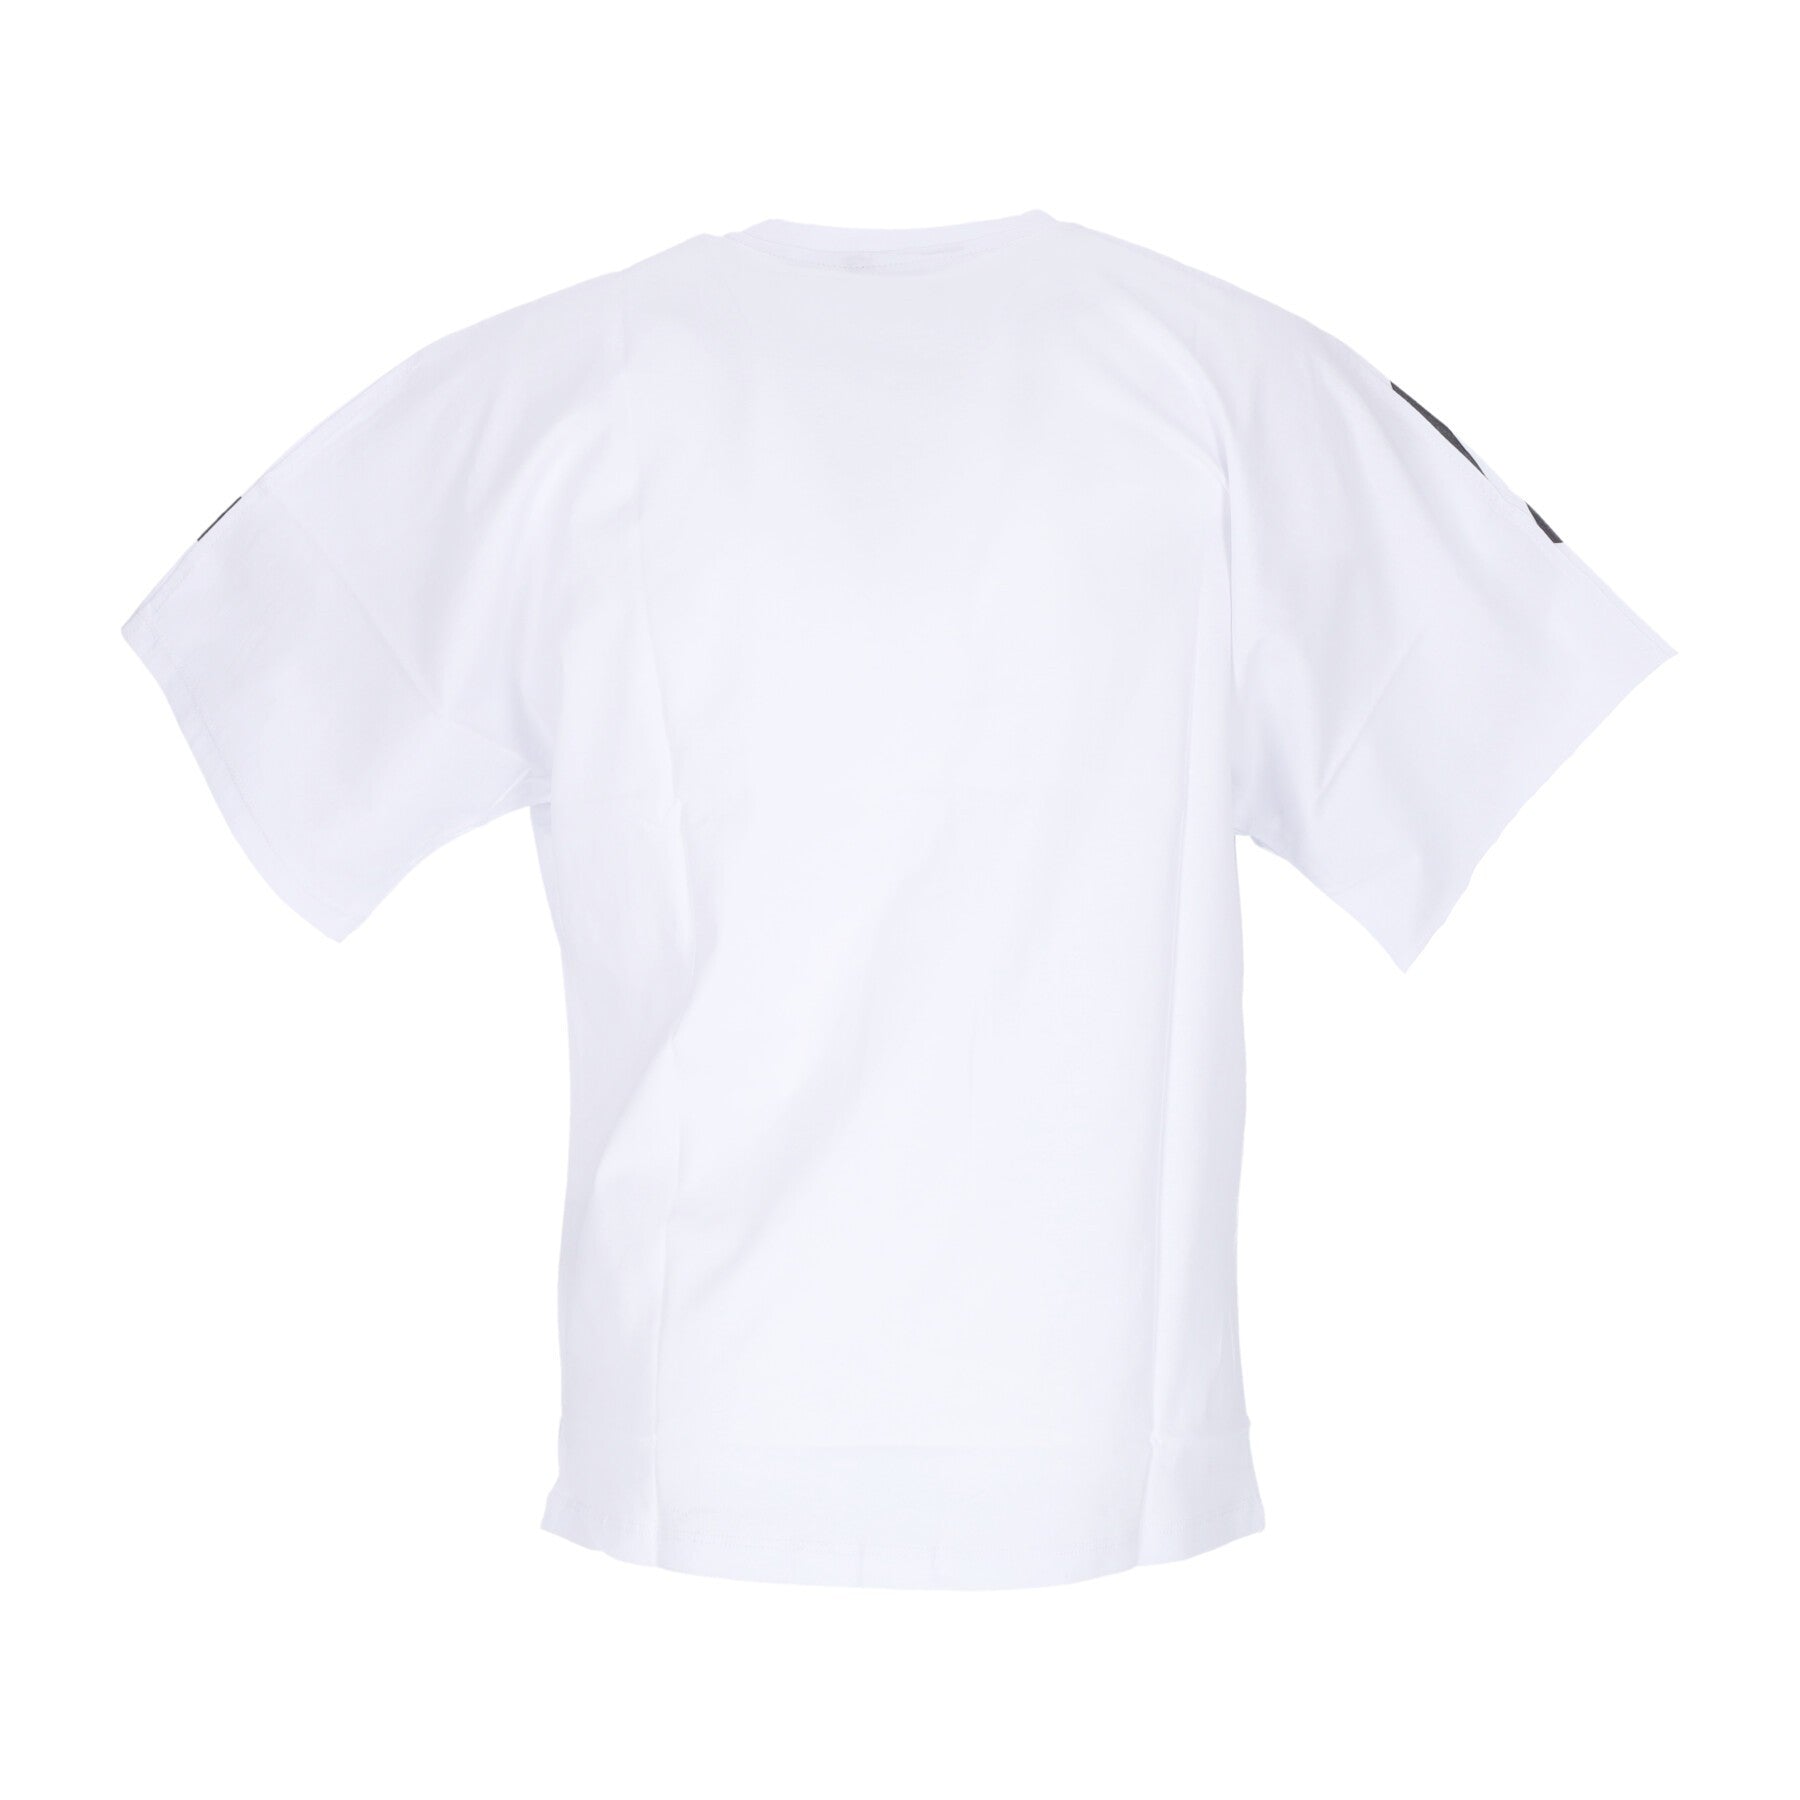 Big Logo Tee Men's T-Shirt